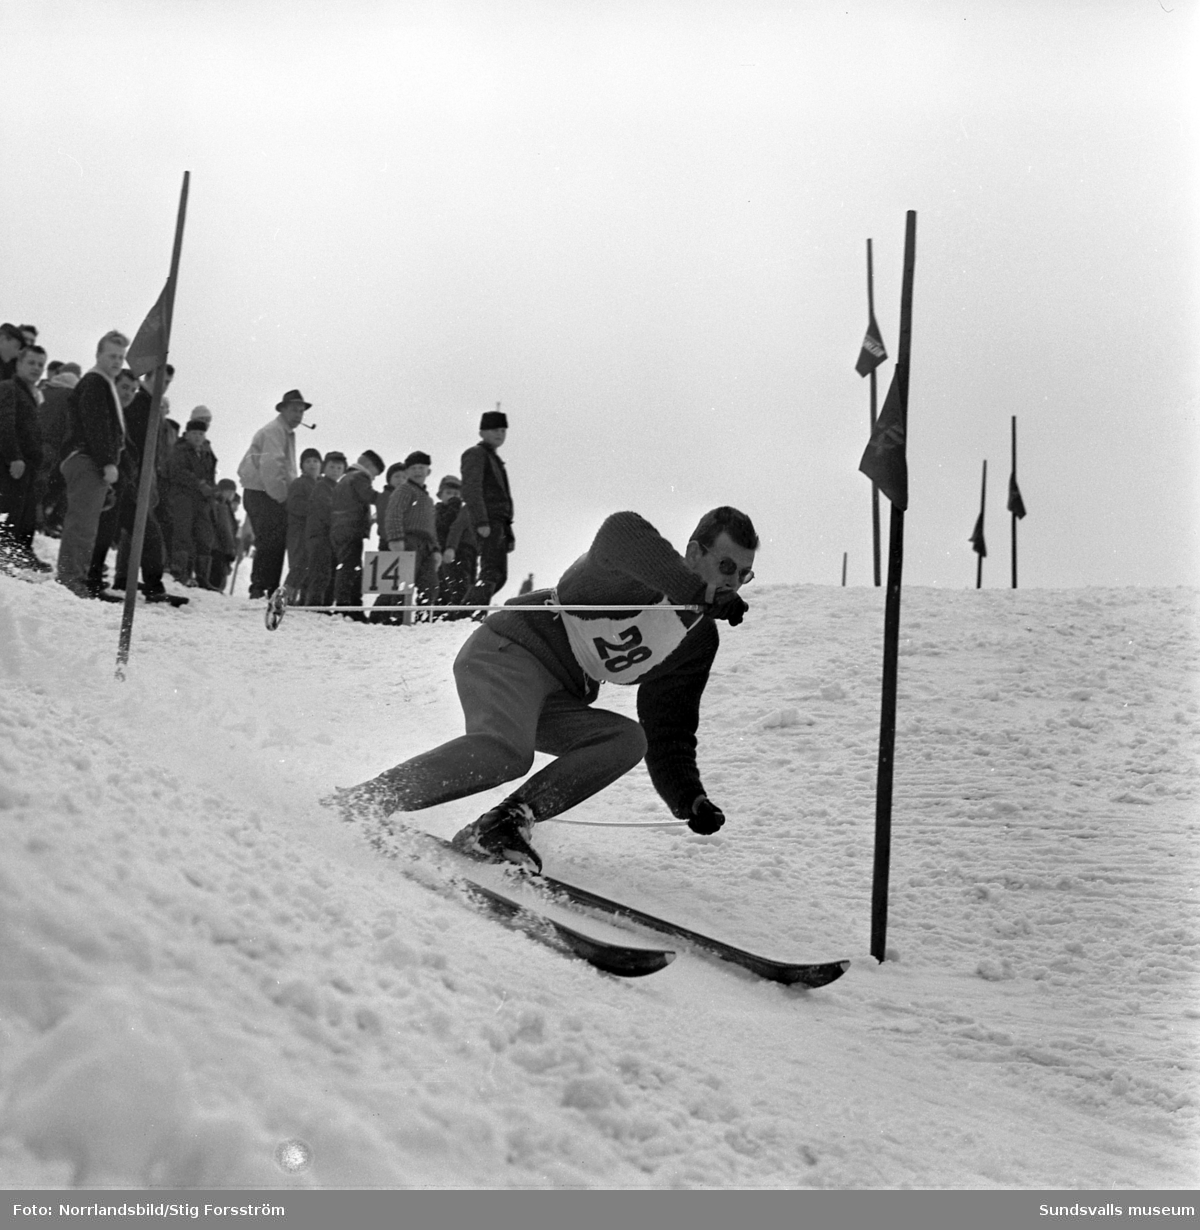 Slalomtävling på Södra berget med norska gutter som gör volter.